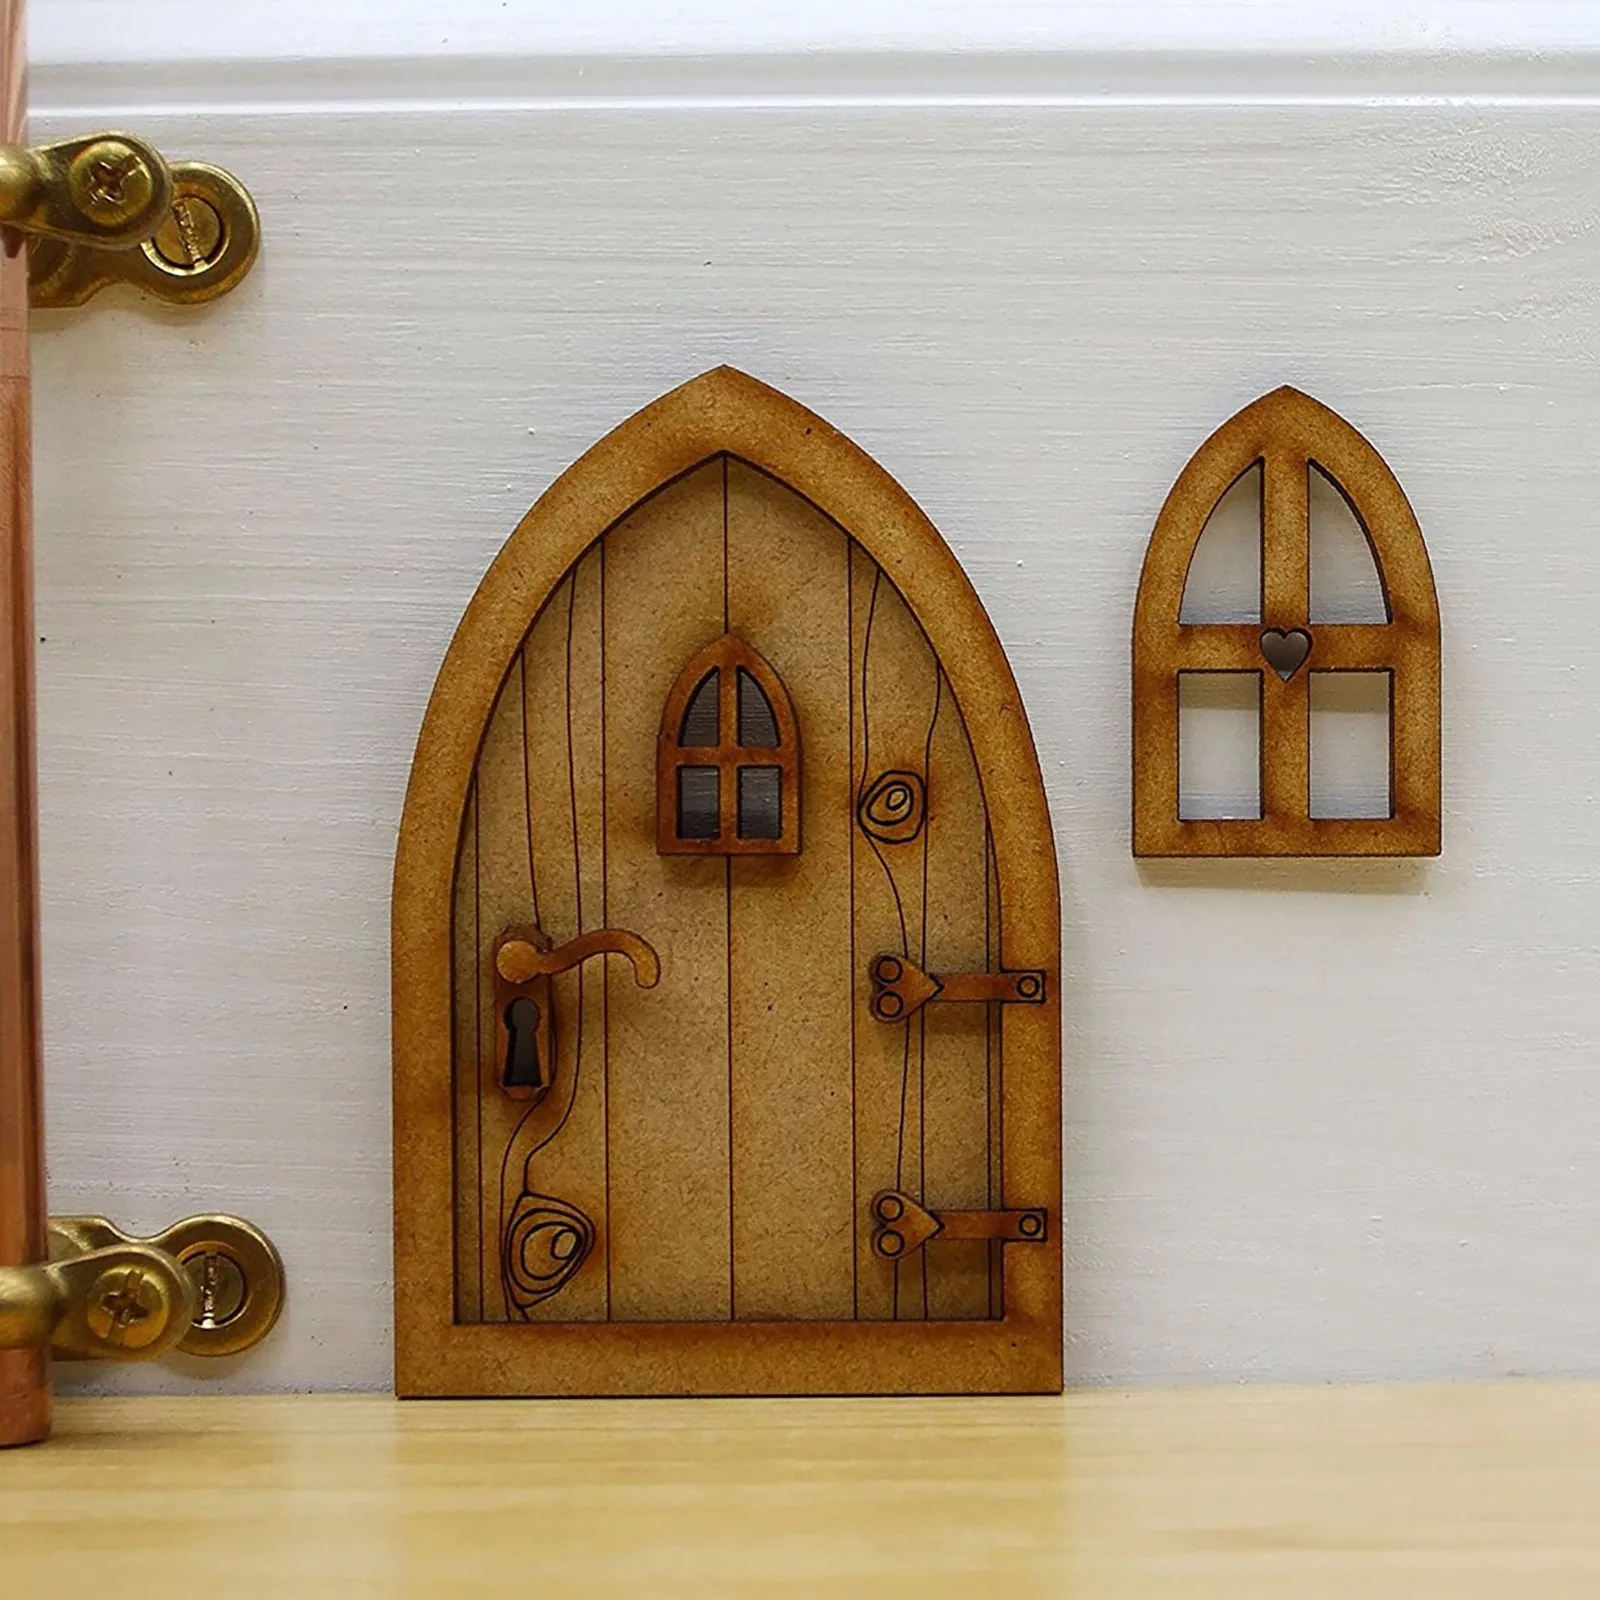 Sleeping DIY 3D DIY Door Decoration Wooden Door Craft Kit with Flowe Micro Gardening Simulation Door Cute Mini Door Home Fairy